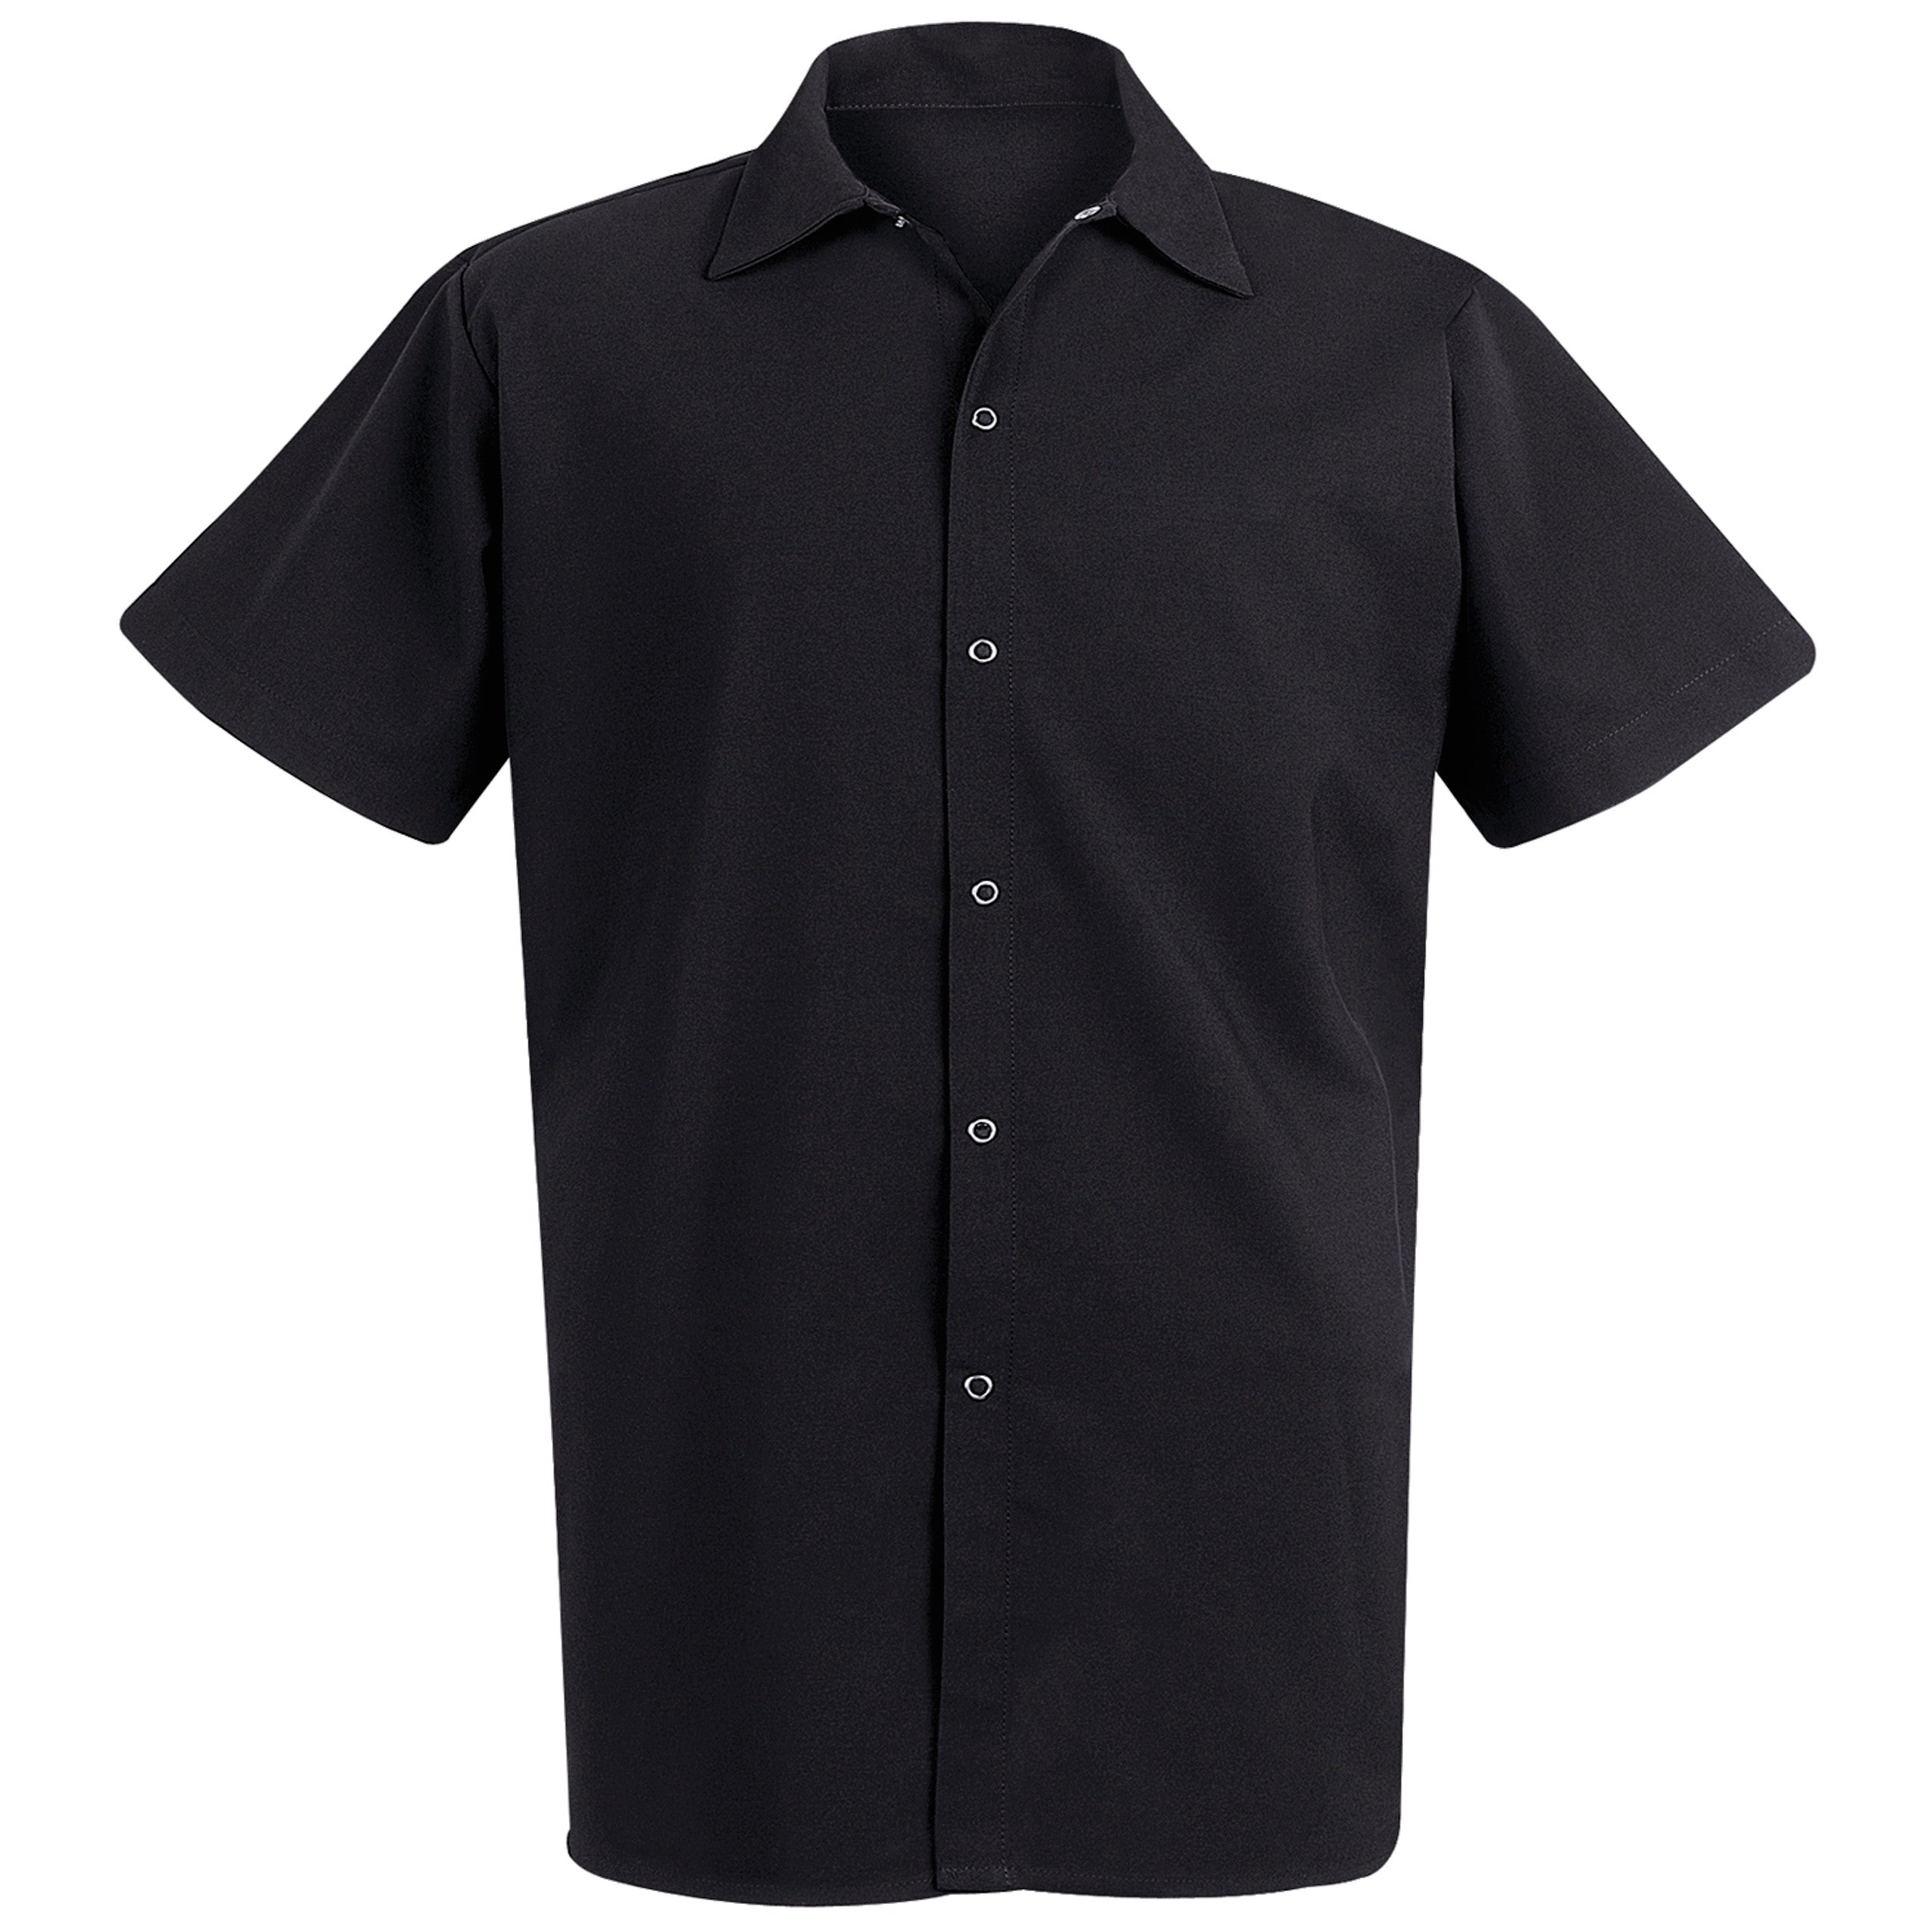 Spun Poly Long Cook Shirt 5035 - Black